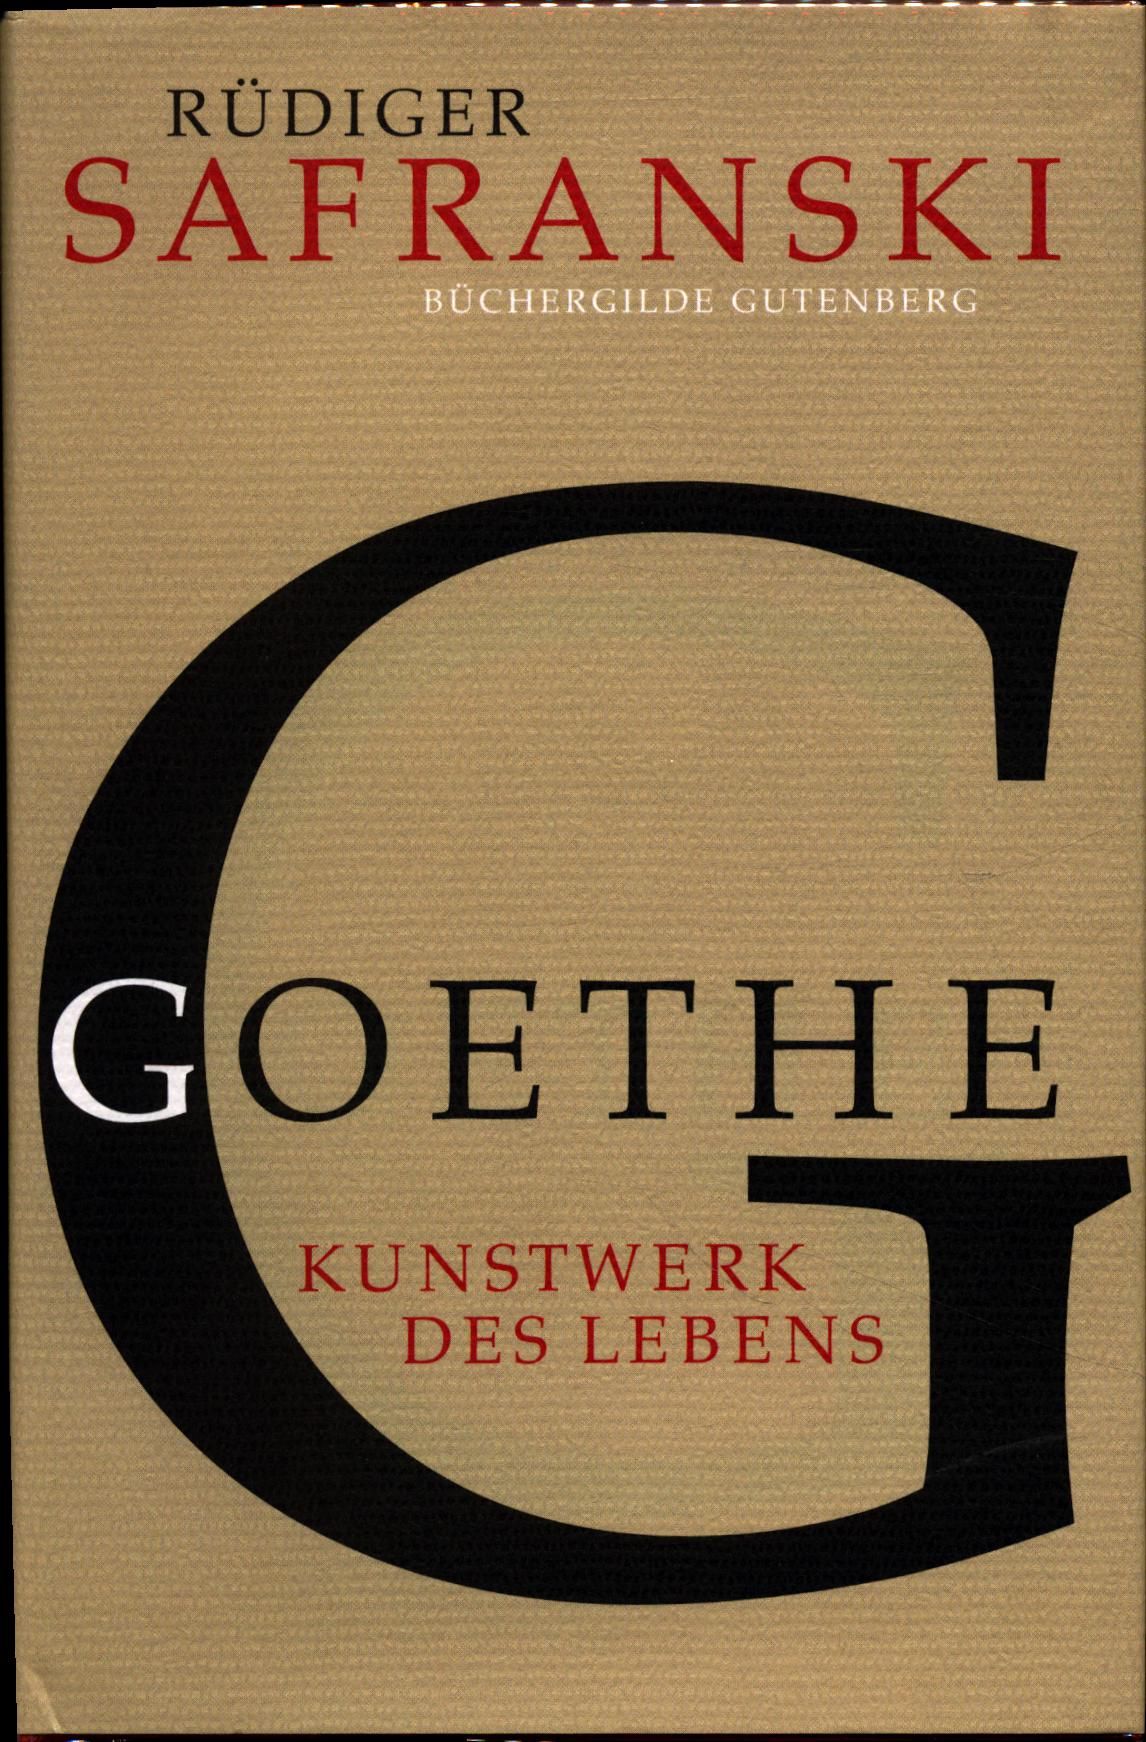 Goethe Kunstwerk des Lebens / Biographie - Safranski, Rüdiger